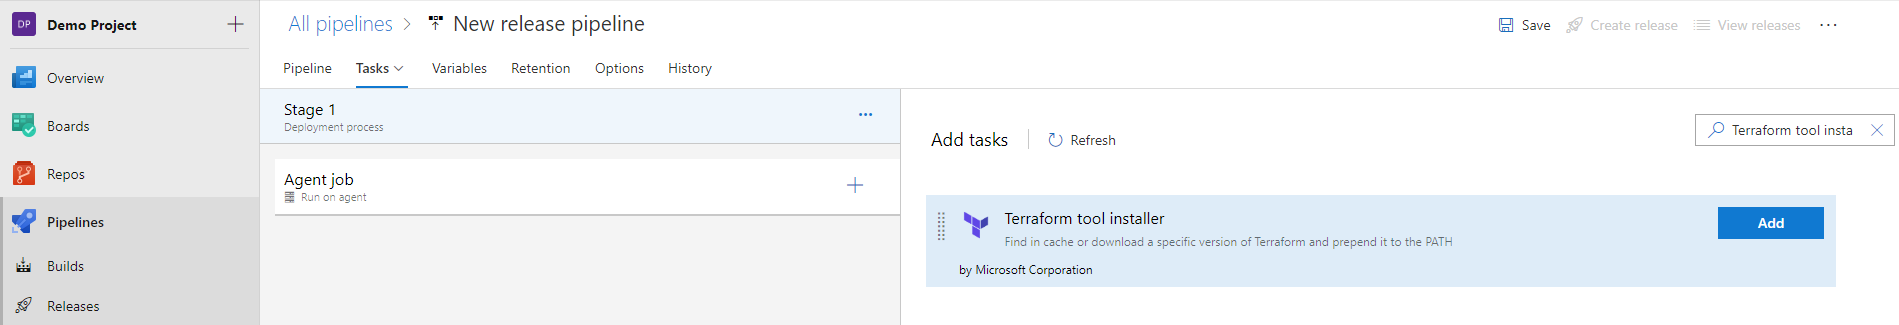 Adding Terraform tool installer task